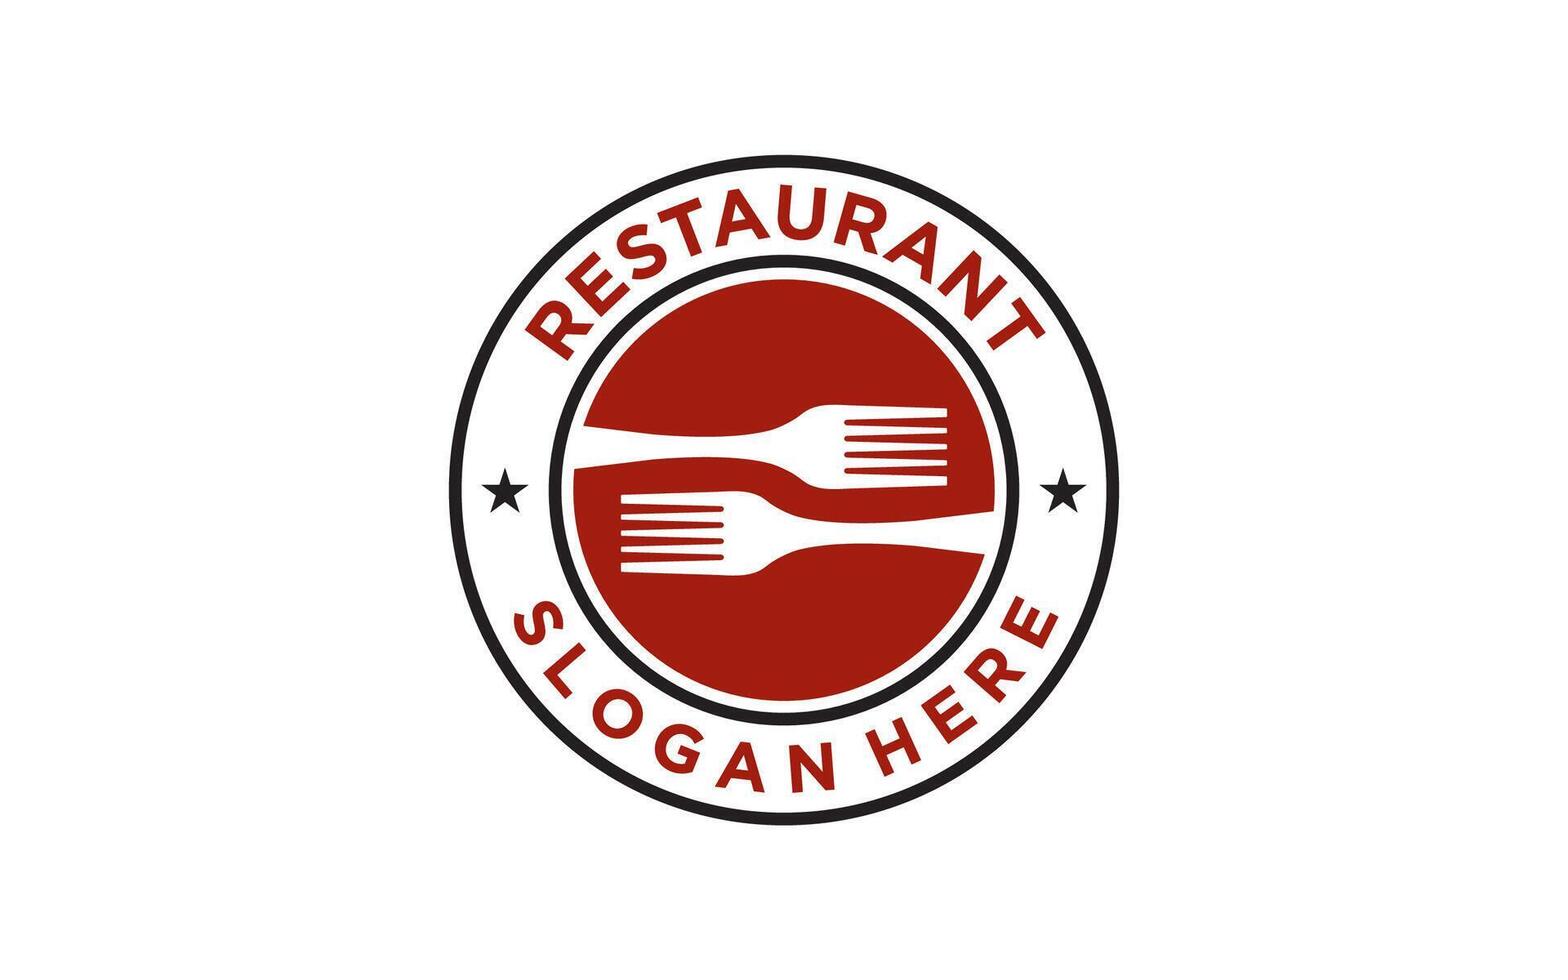 Vintage restaurant logo. Restaurant badge, poster with fork. Vector emblem template